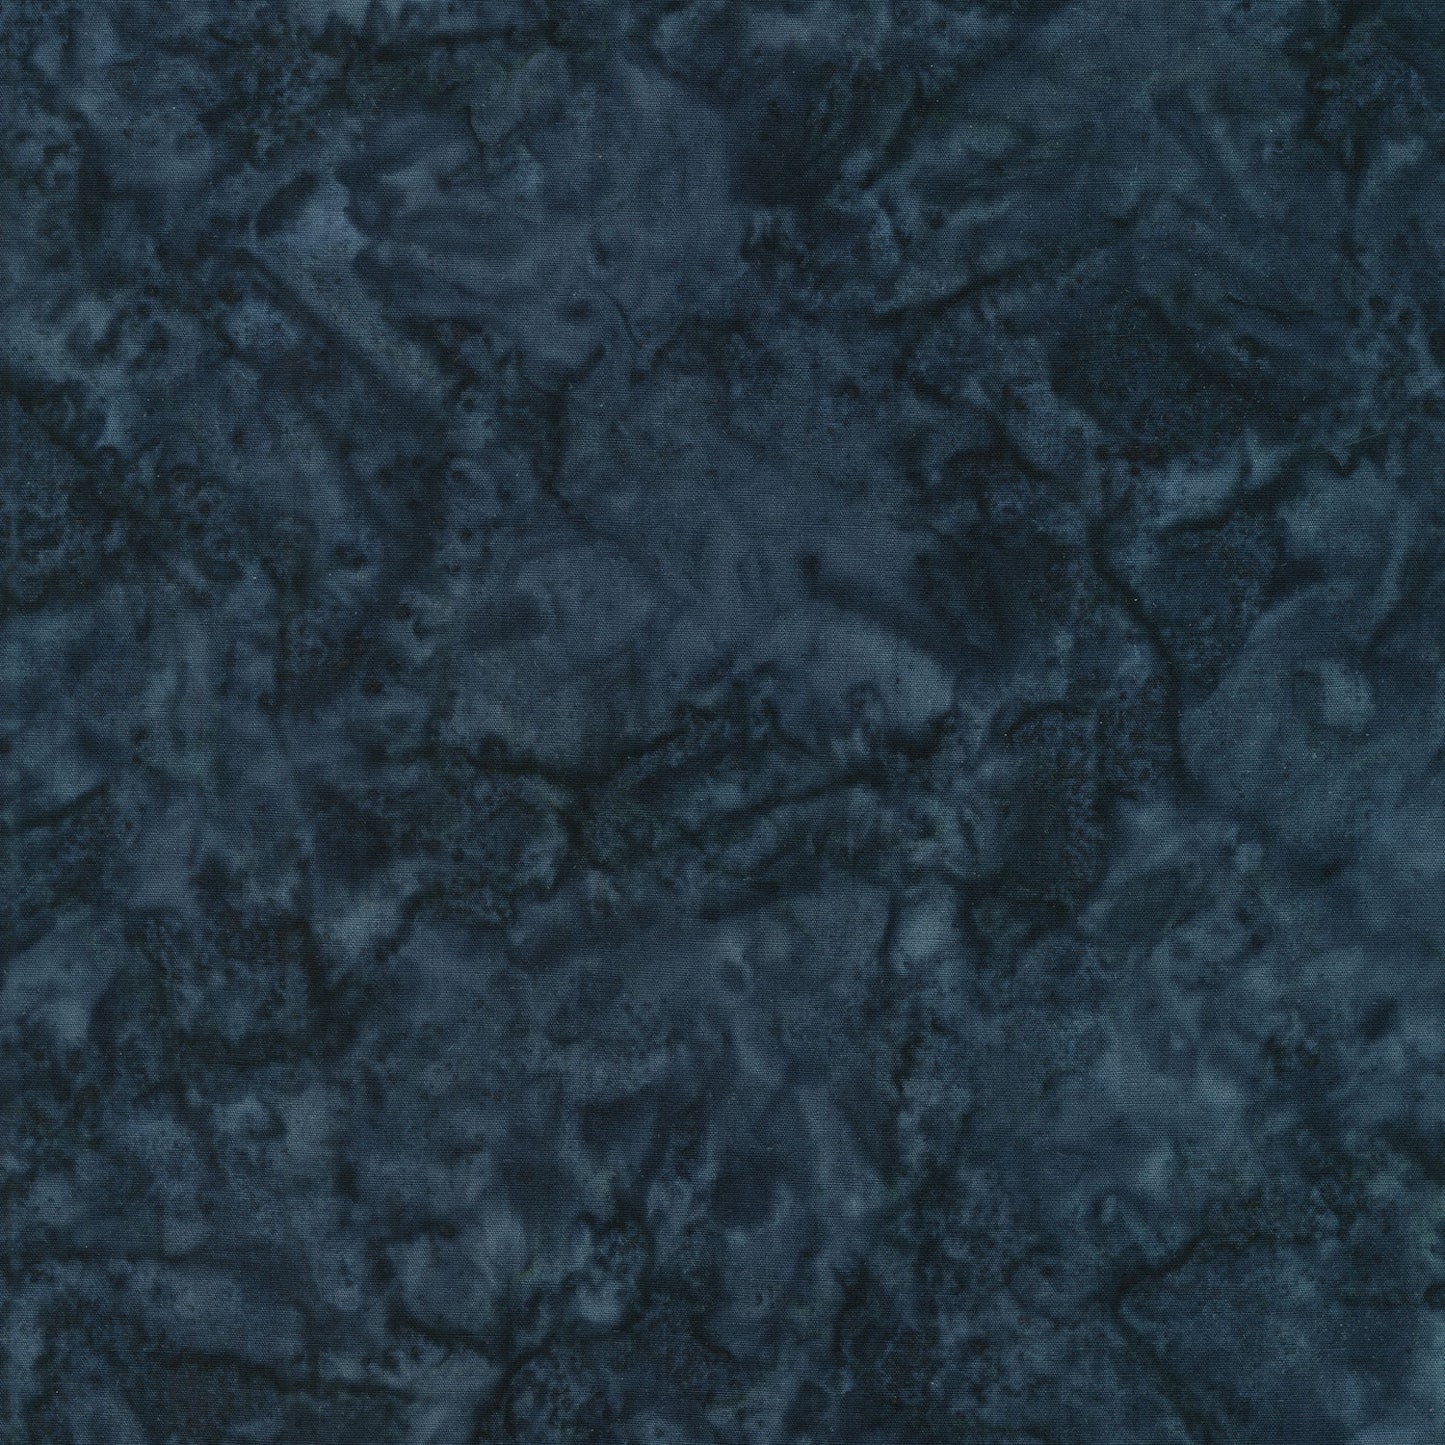 Bodacious Black Batik Solids - Slate Yardage Primary Image